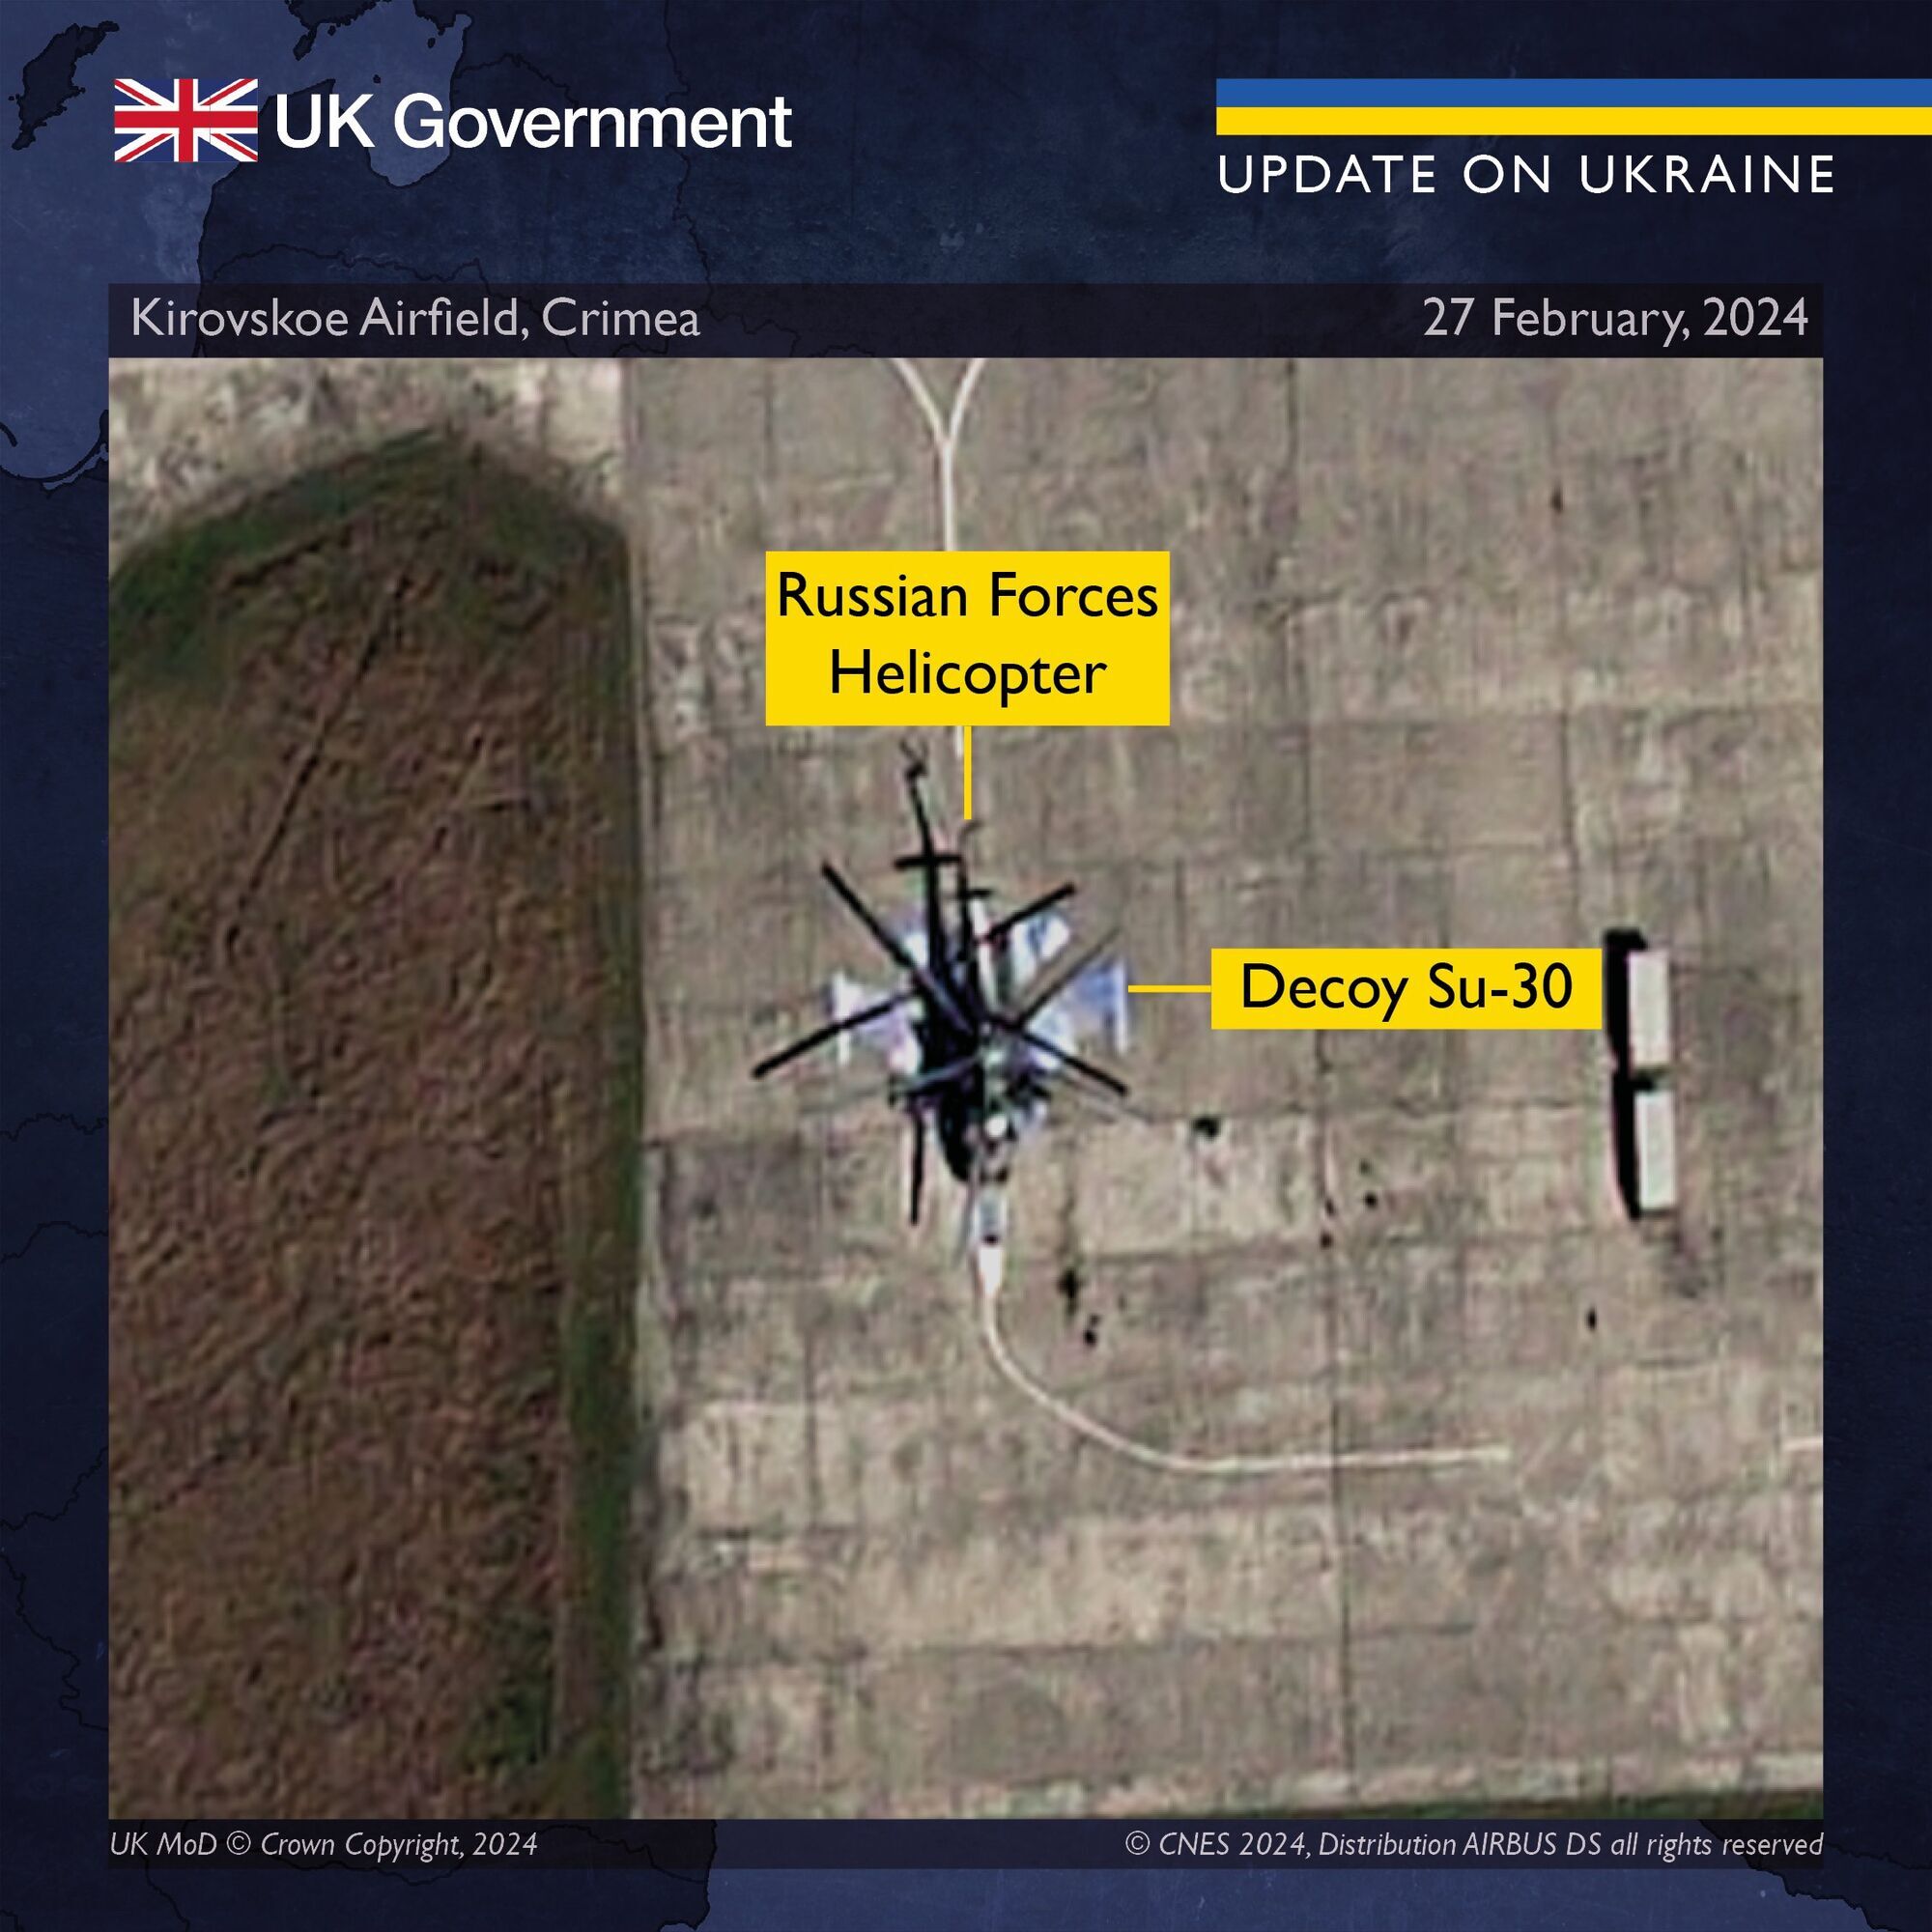 Используют приманки: разведка Британии рассказала, как РФ пытается оградить свои самолеты от ударов